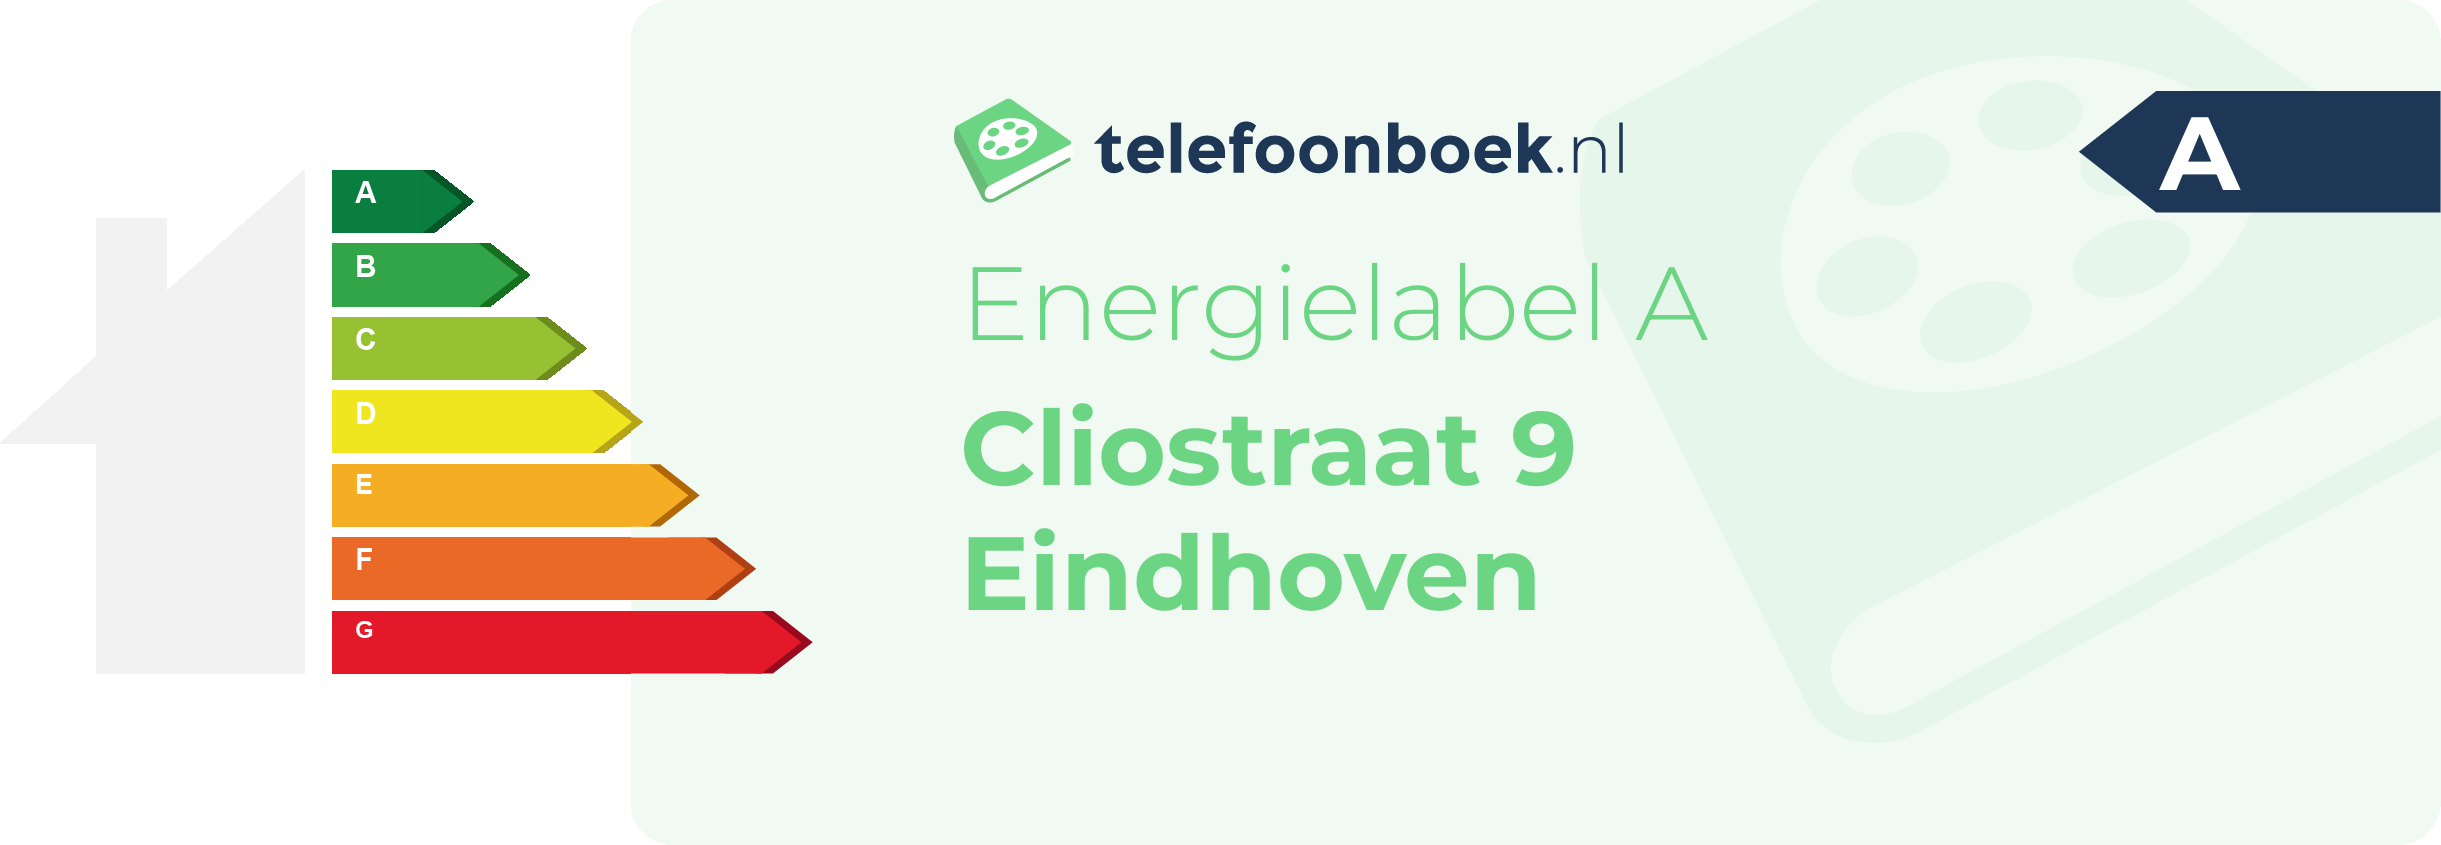 Energielabel Cliostraat 9 Eindhoven